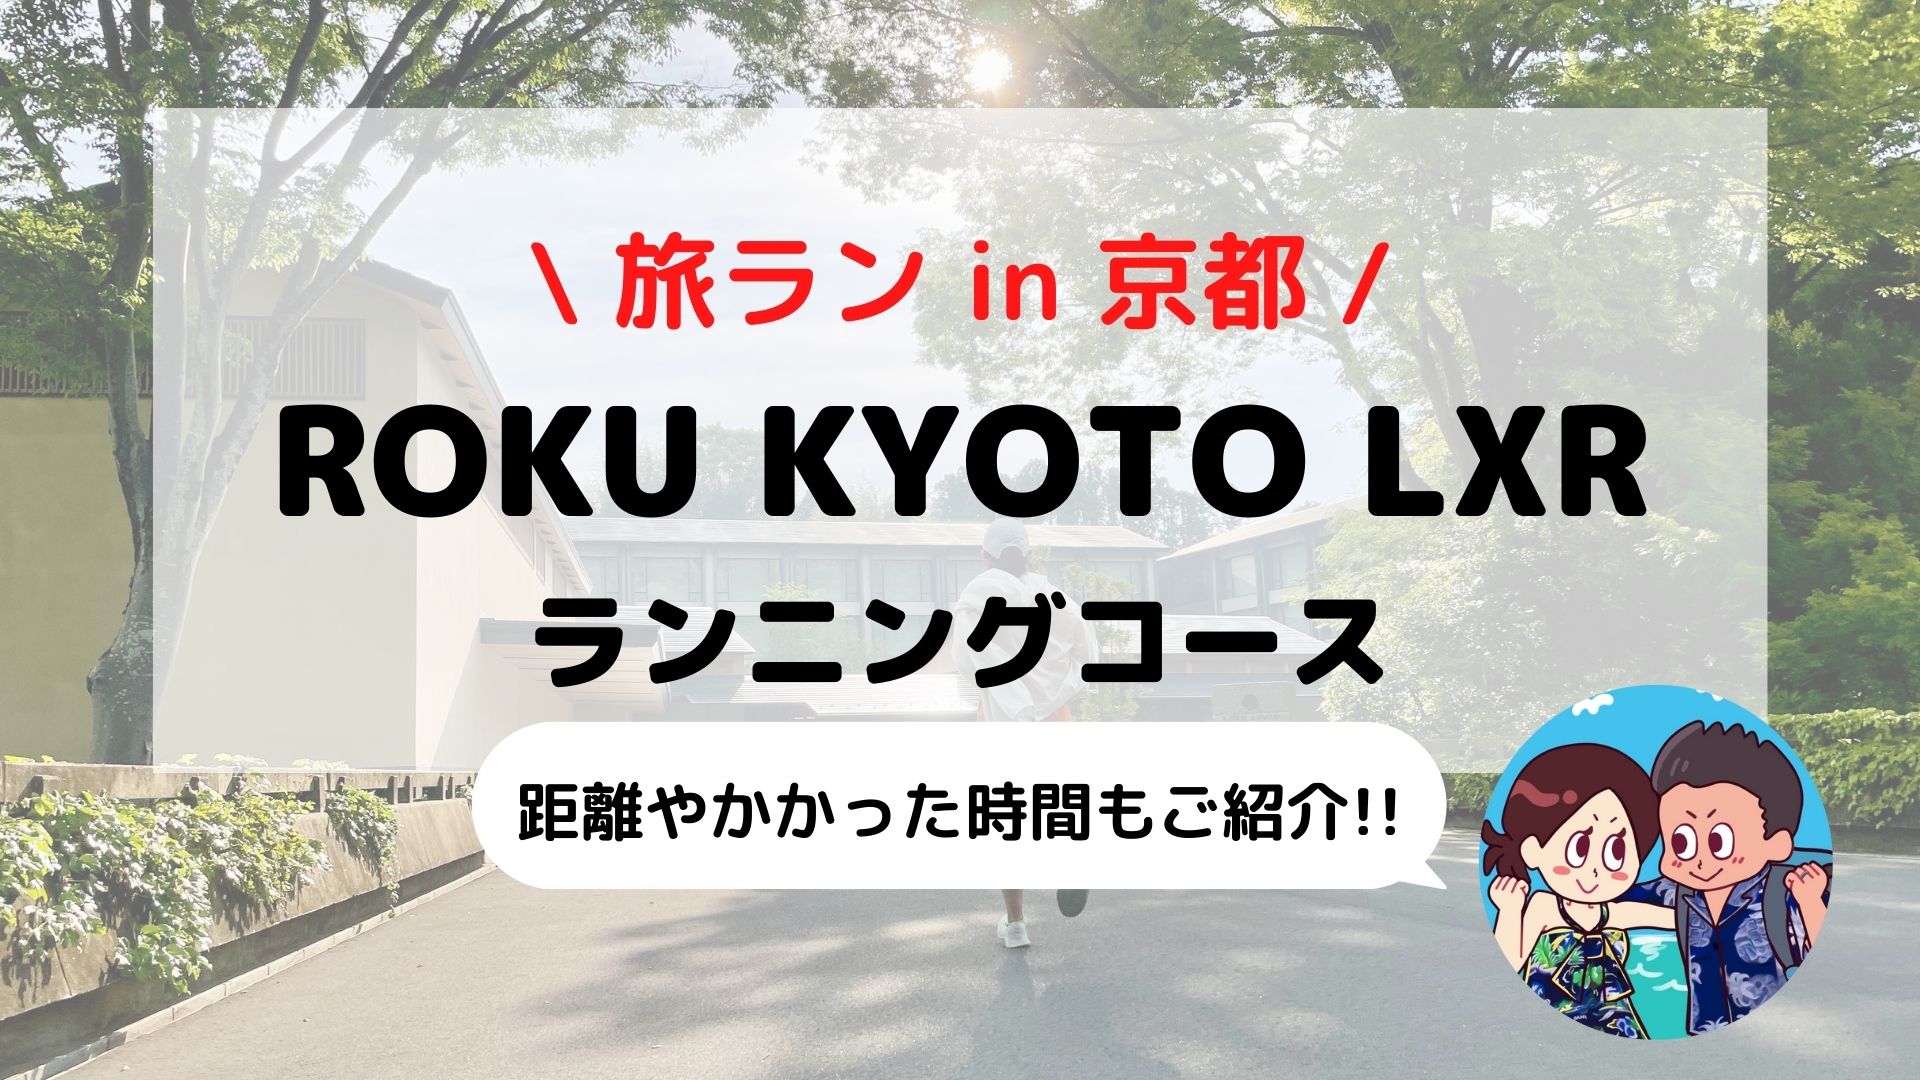 【旅ラン】京都を走ろう「ロク京都(ROKU KYOTO)」おすすめランニングコース